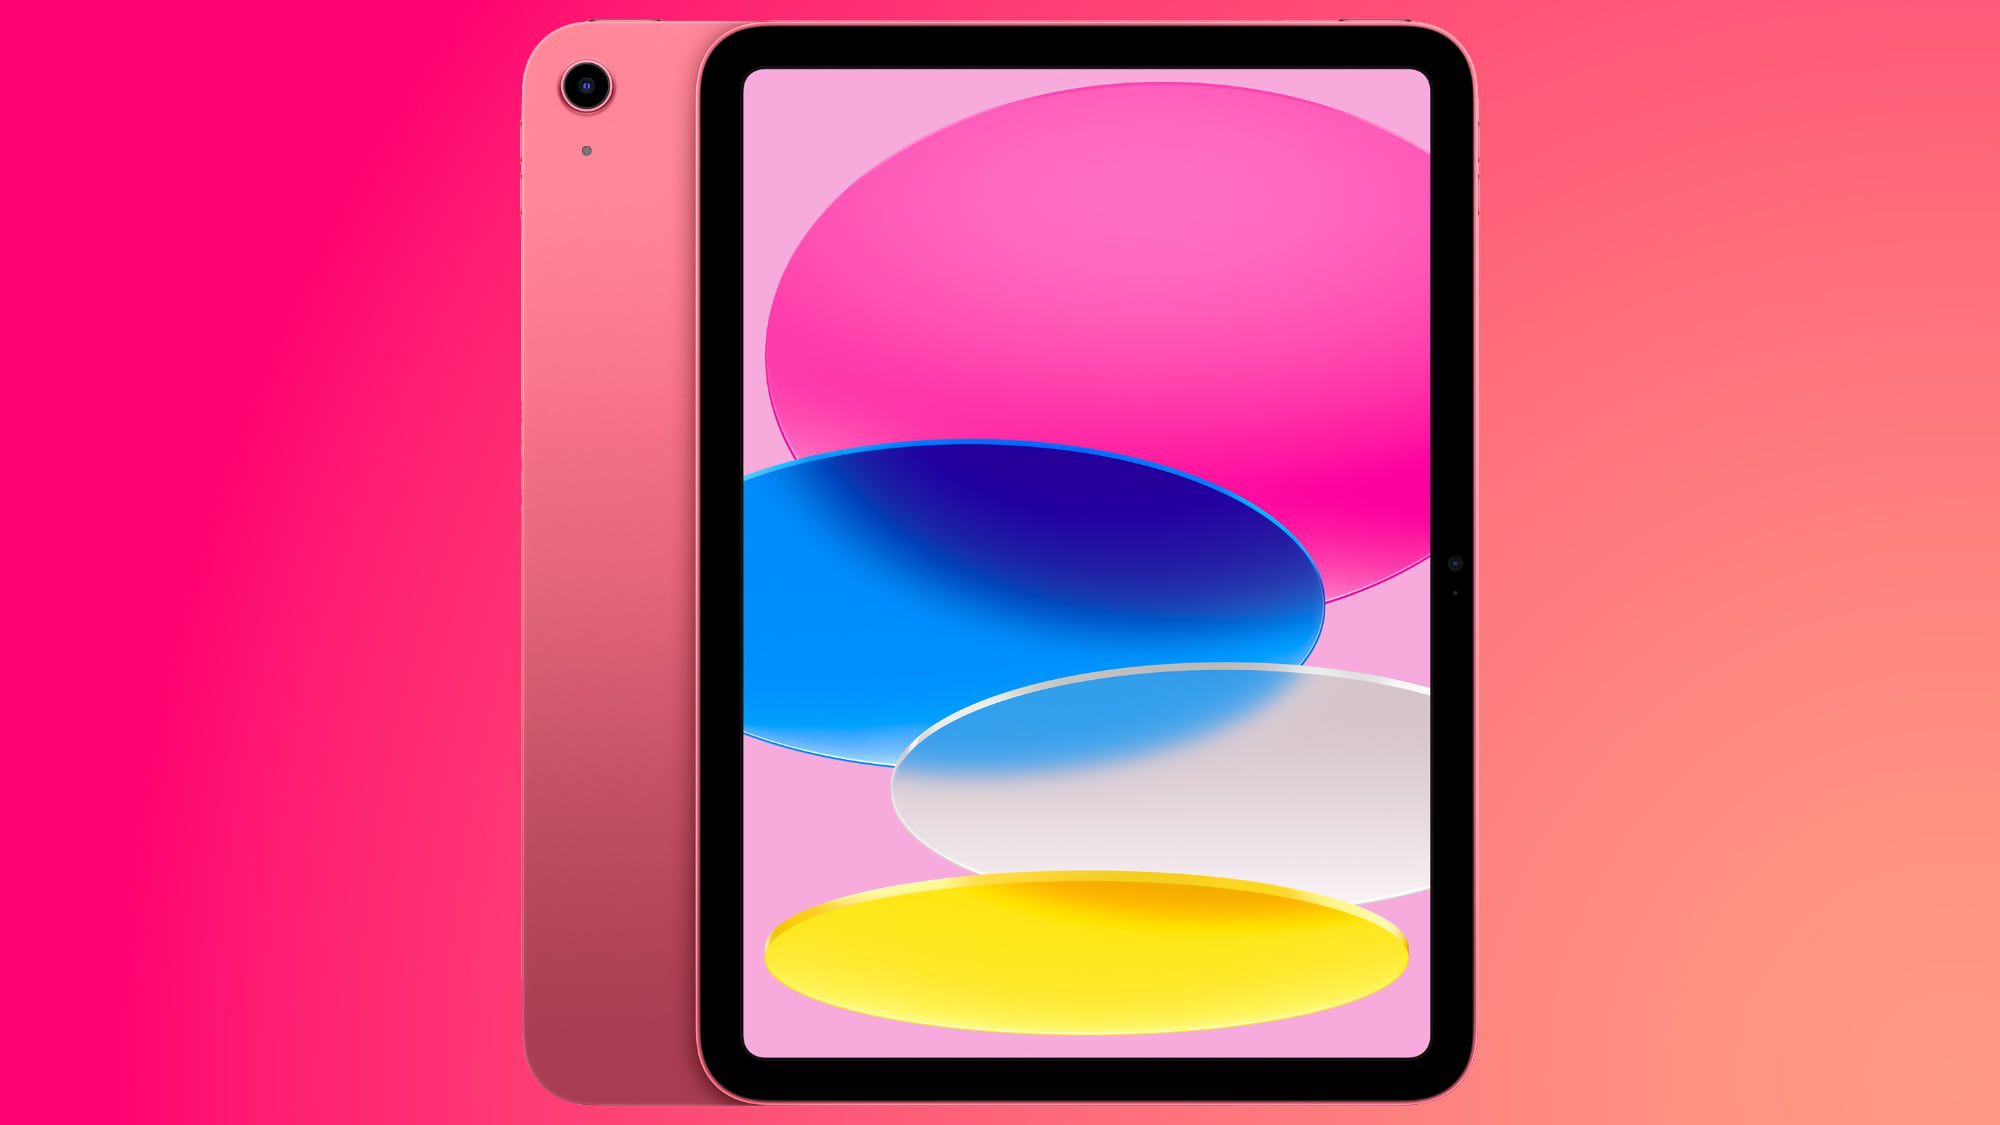 Deals: New iPad Deals Include $50 Off 2022 iPad and $250 Off 2021 iPad Pro - macrumors.com